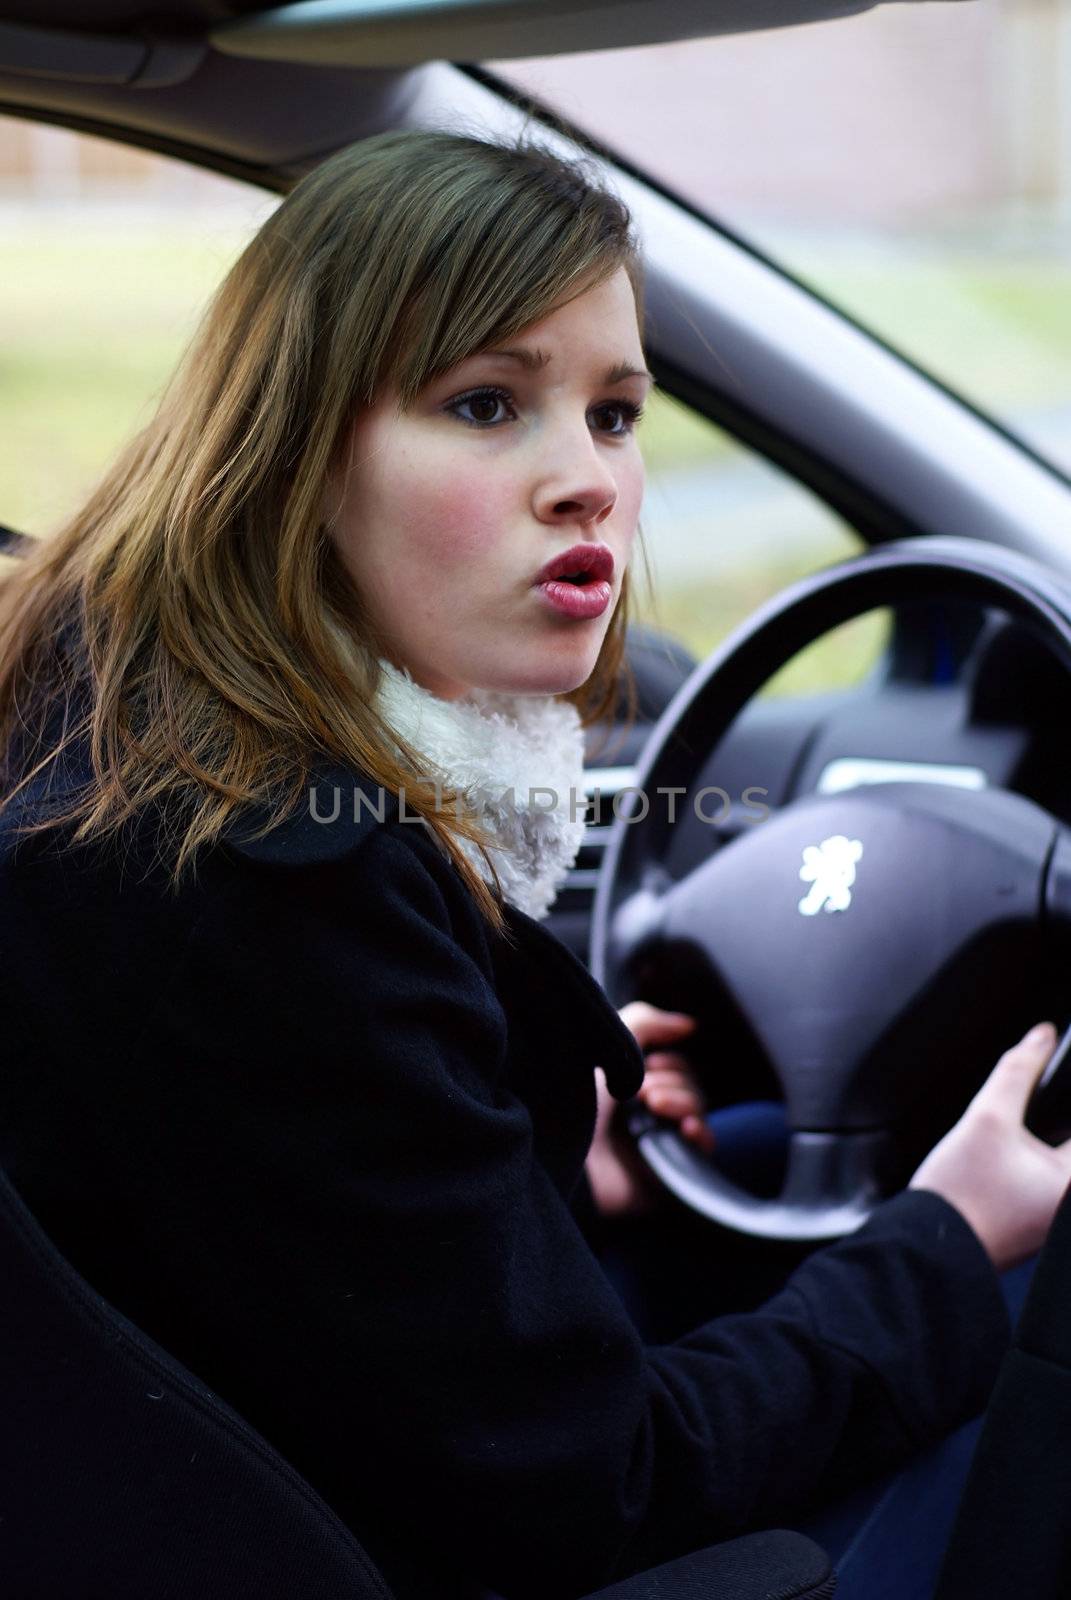 Teen girl mad behind the wheel.